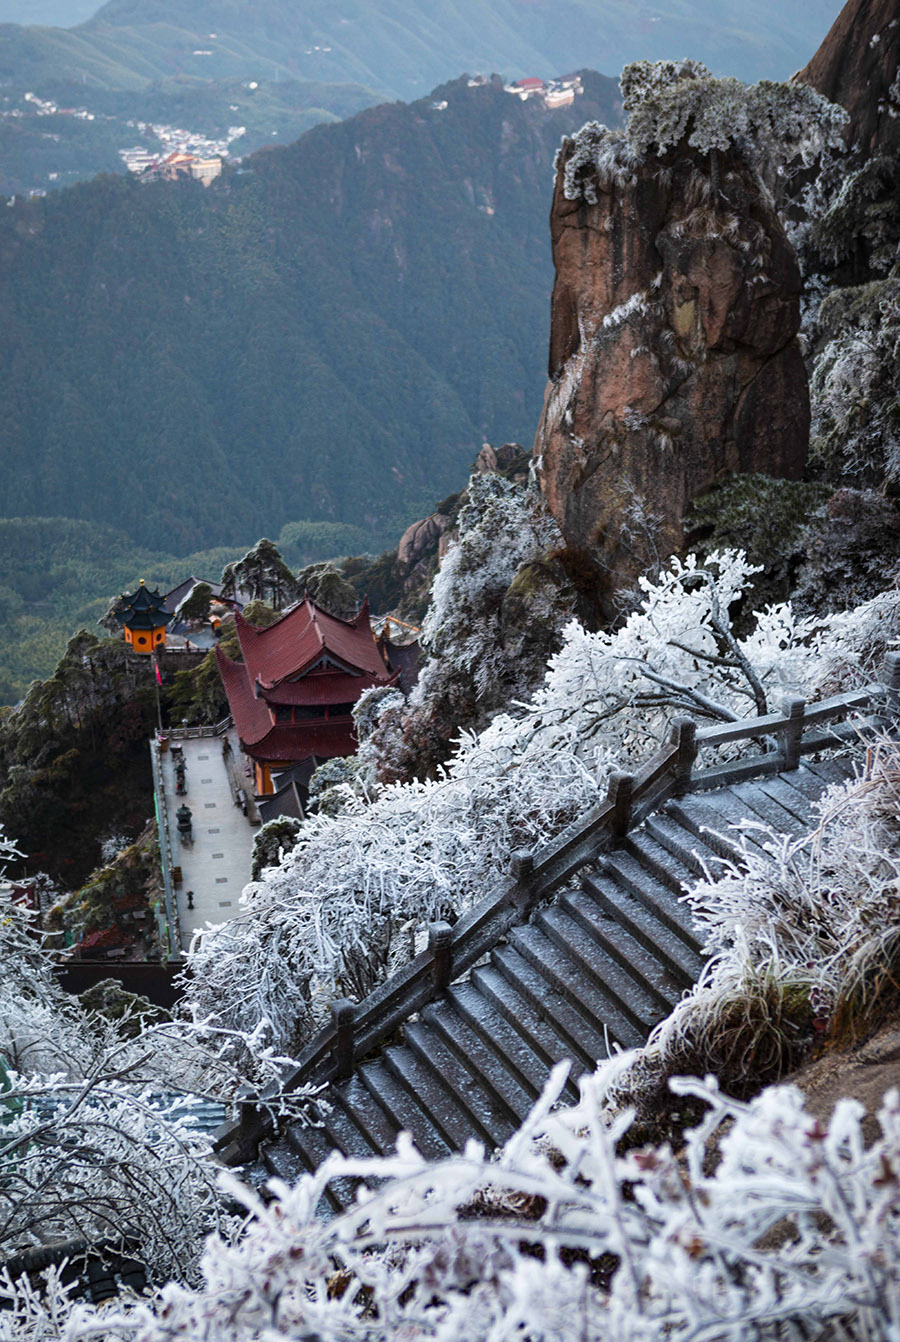 First snowfall in Jiuhua Mountain in E China